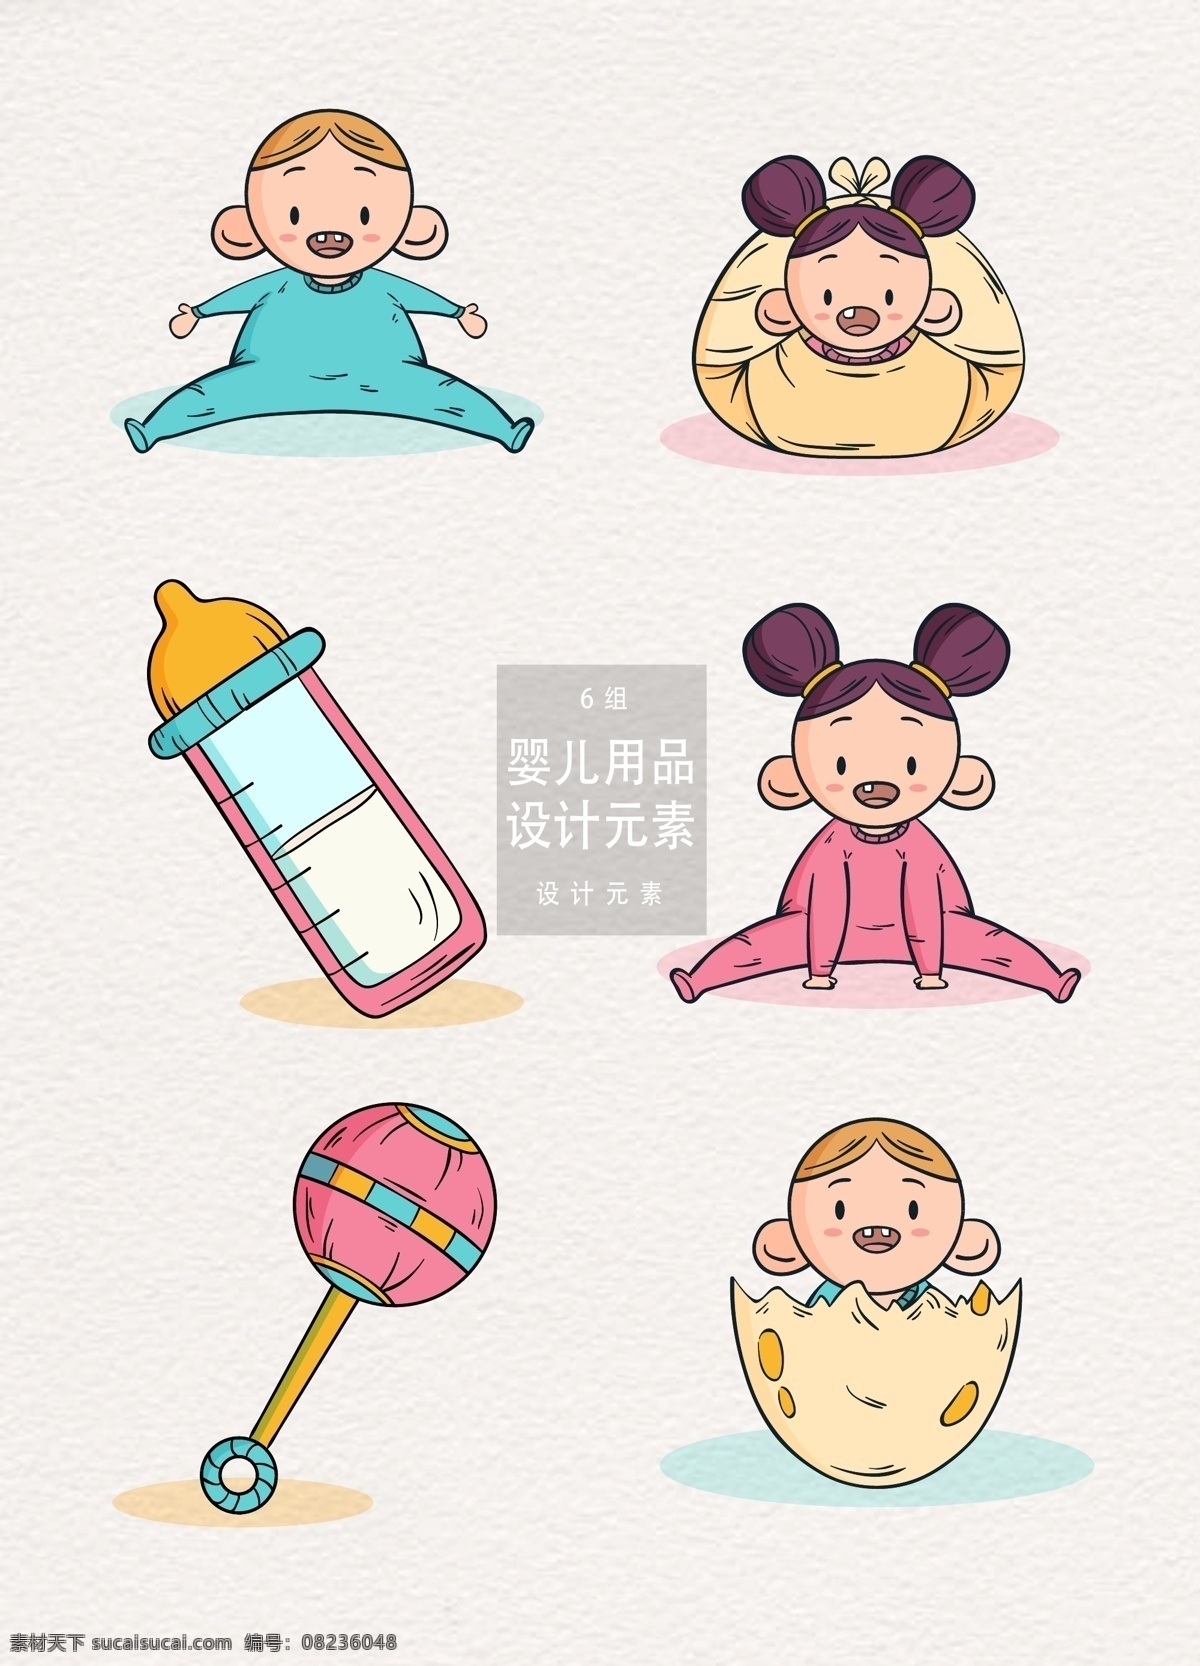 手绘 婴儿 装饰 图案 婴儿用品 设计元素 宝宝 生日 奶瓶 手绘婴儿 婴儿日用品 日用品 庆生